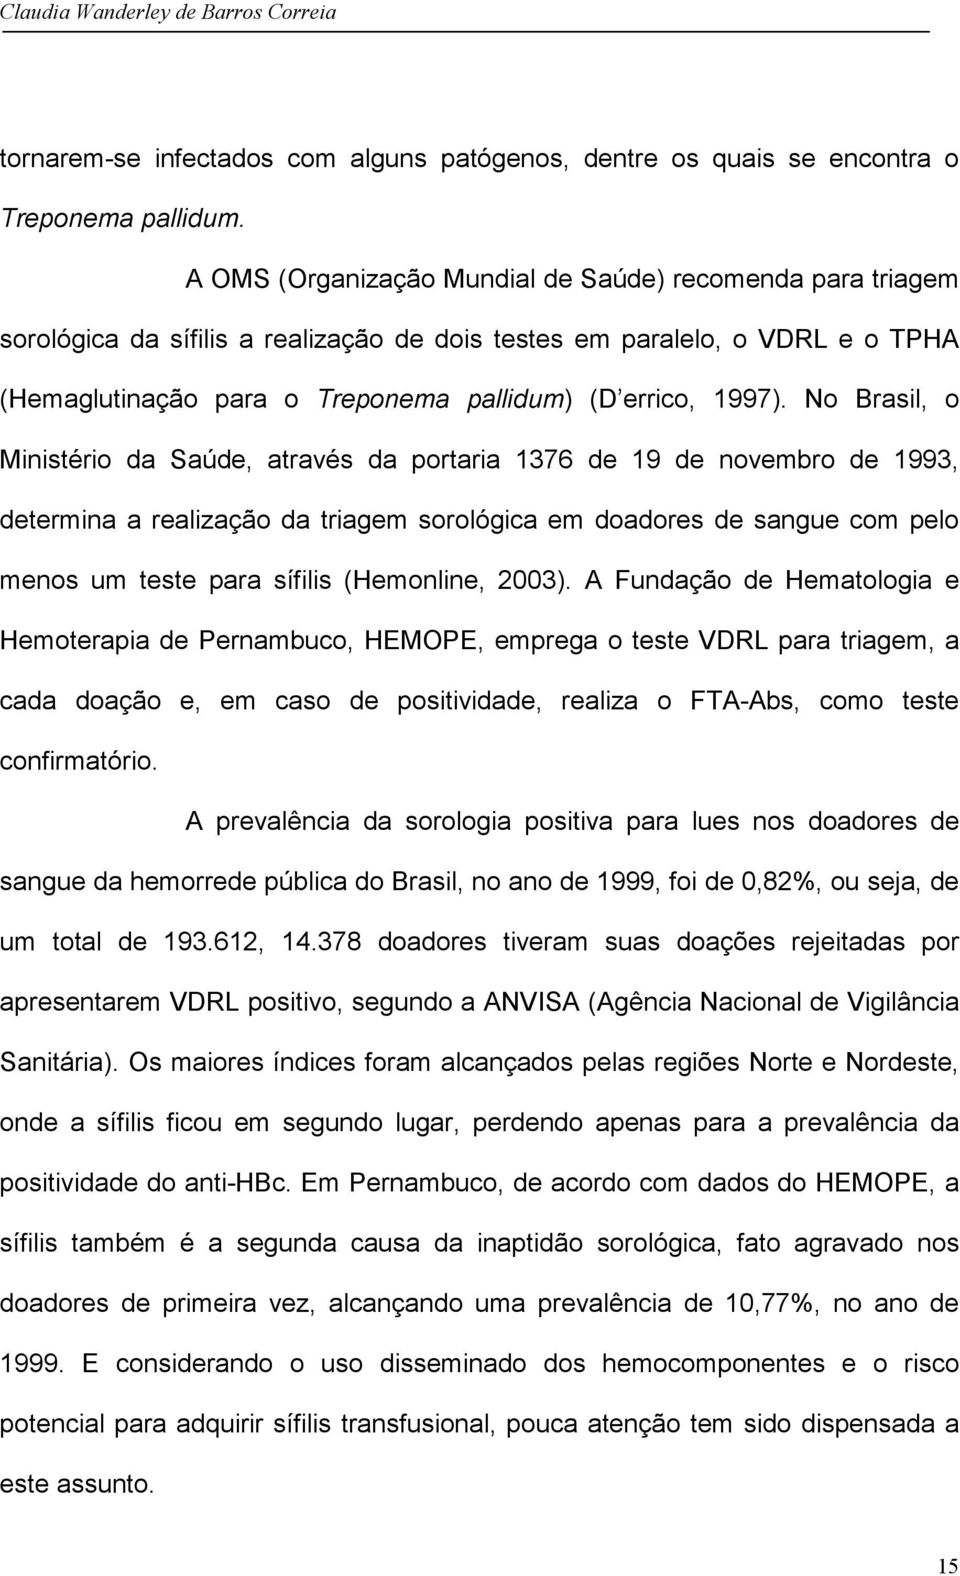 No Brasil, o Ministério da Saúde, através da portaria 1376 de 19 de novembro de 1993, determina a realização da triagem sorológica em doadores de sangue com pelo menos um teste para sífilis